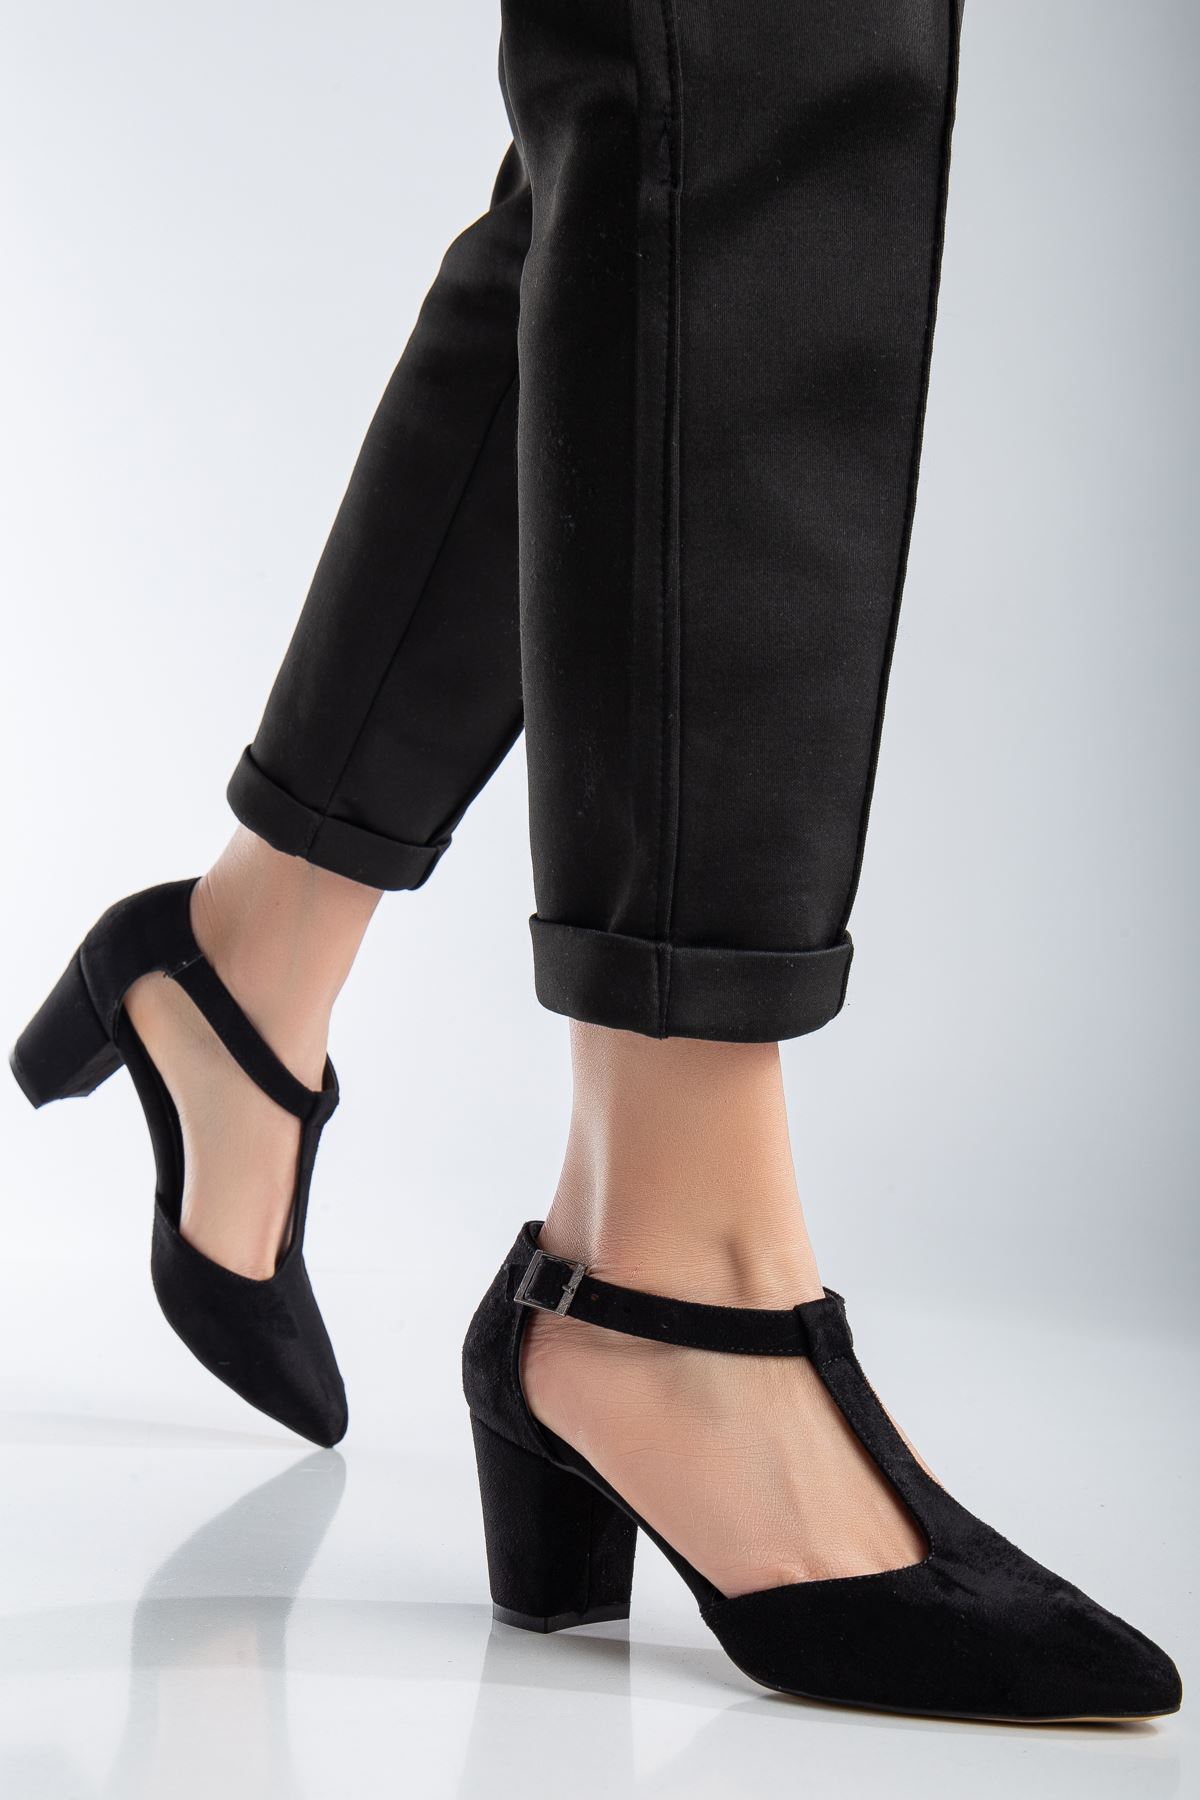 Niven Siyah Süet Topuklu Kadın Ayakkabı 